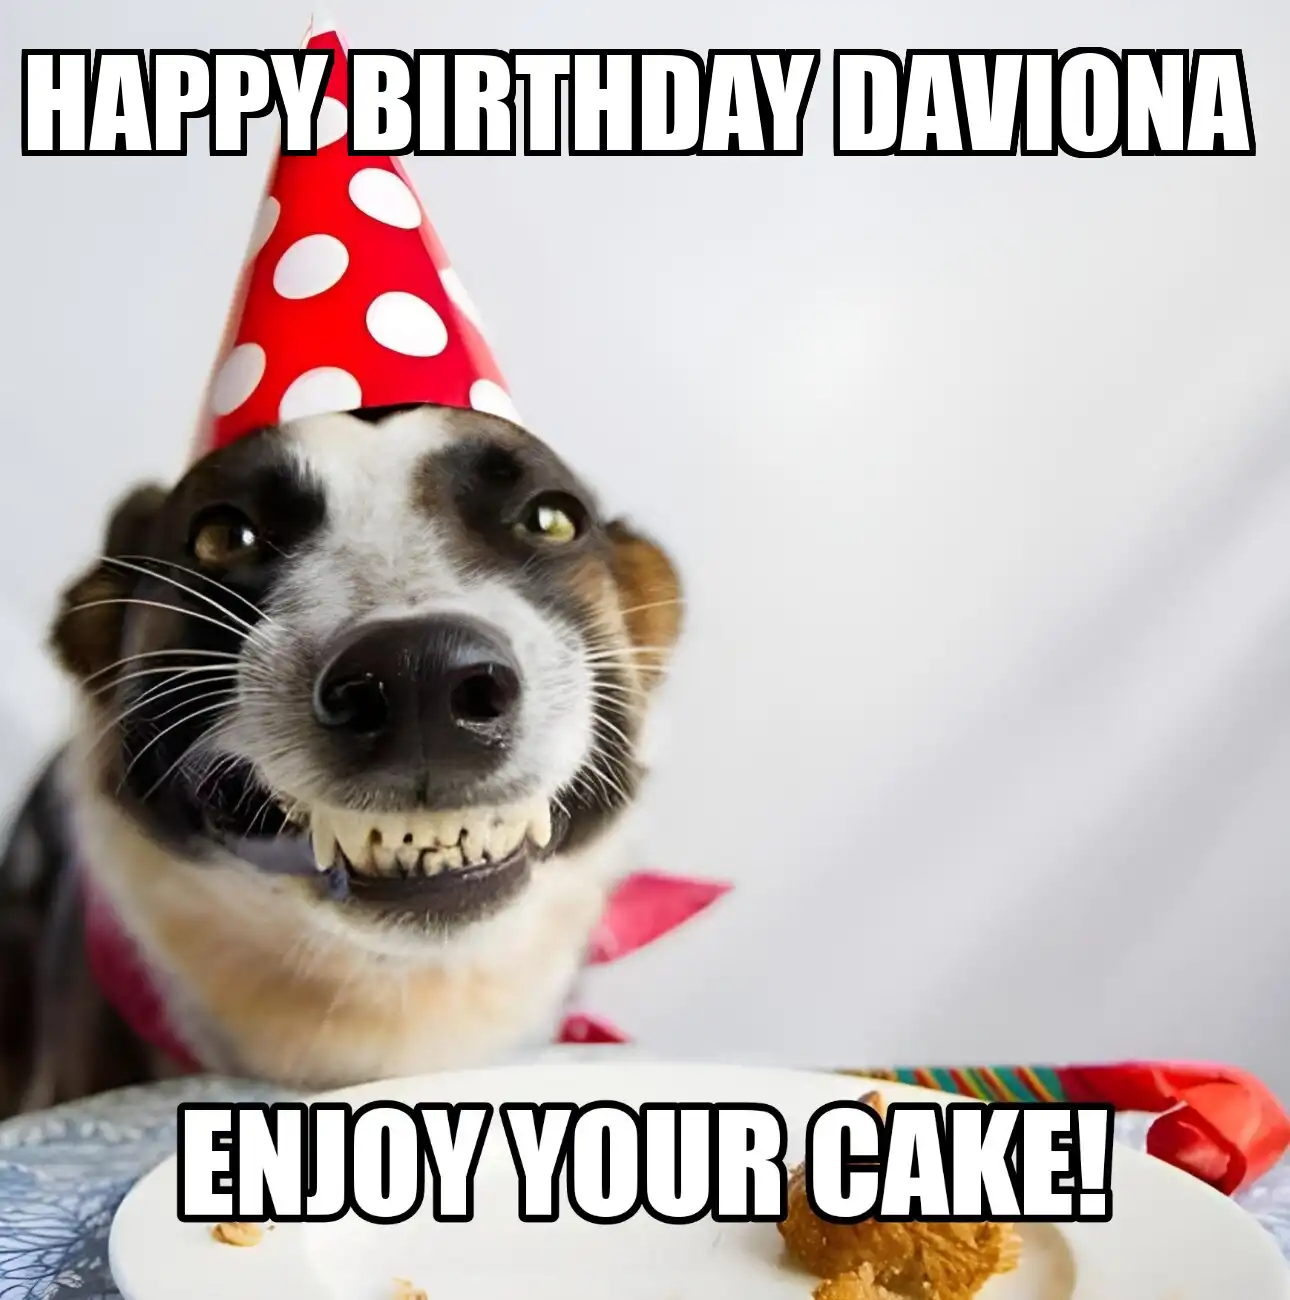 Happy Birthday Daviona Enjoy Your Cake Dog Meme